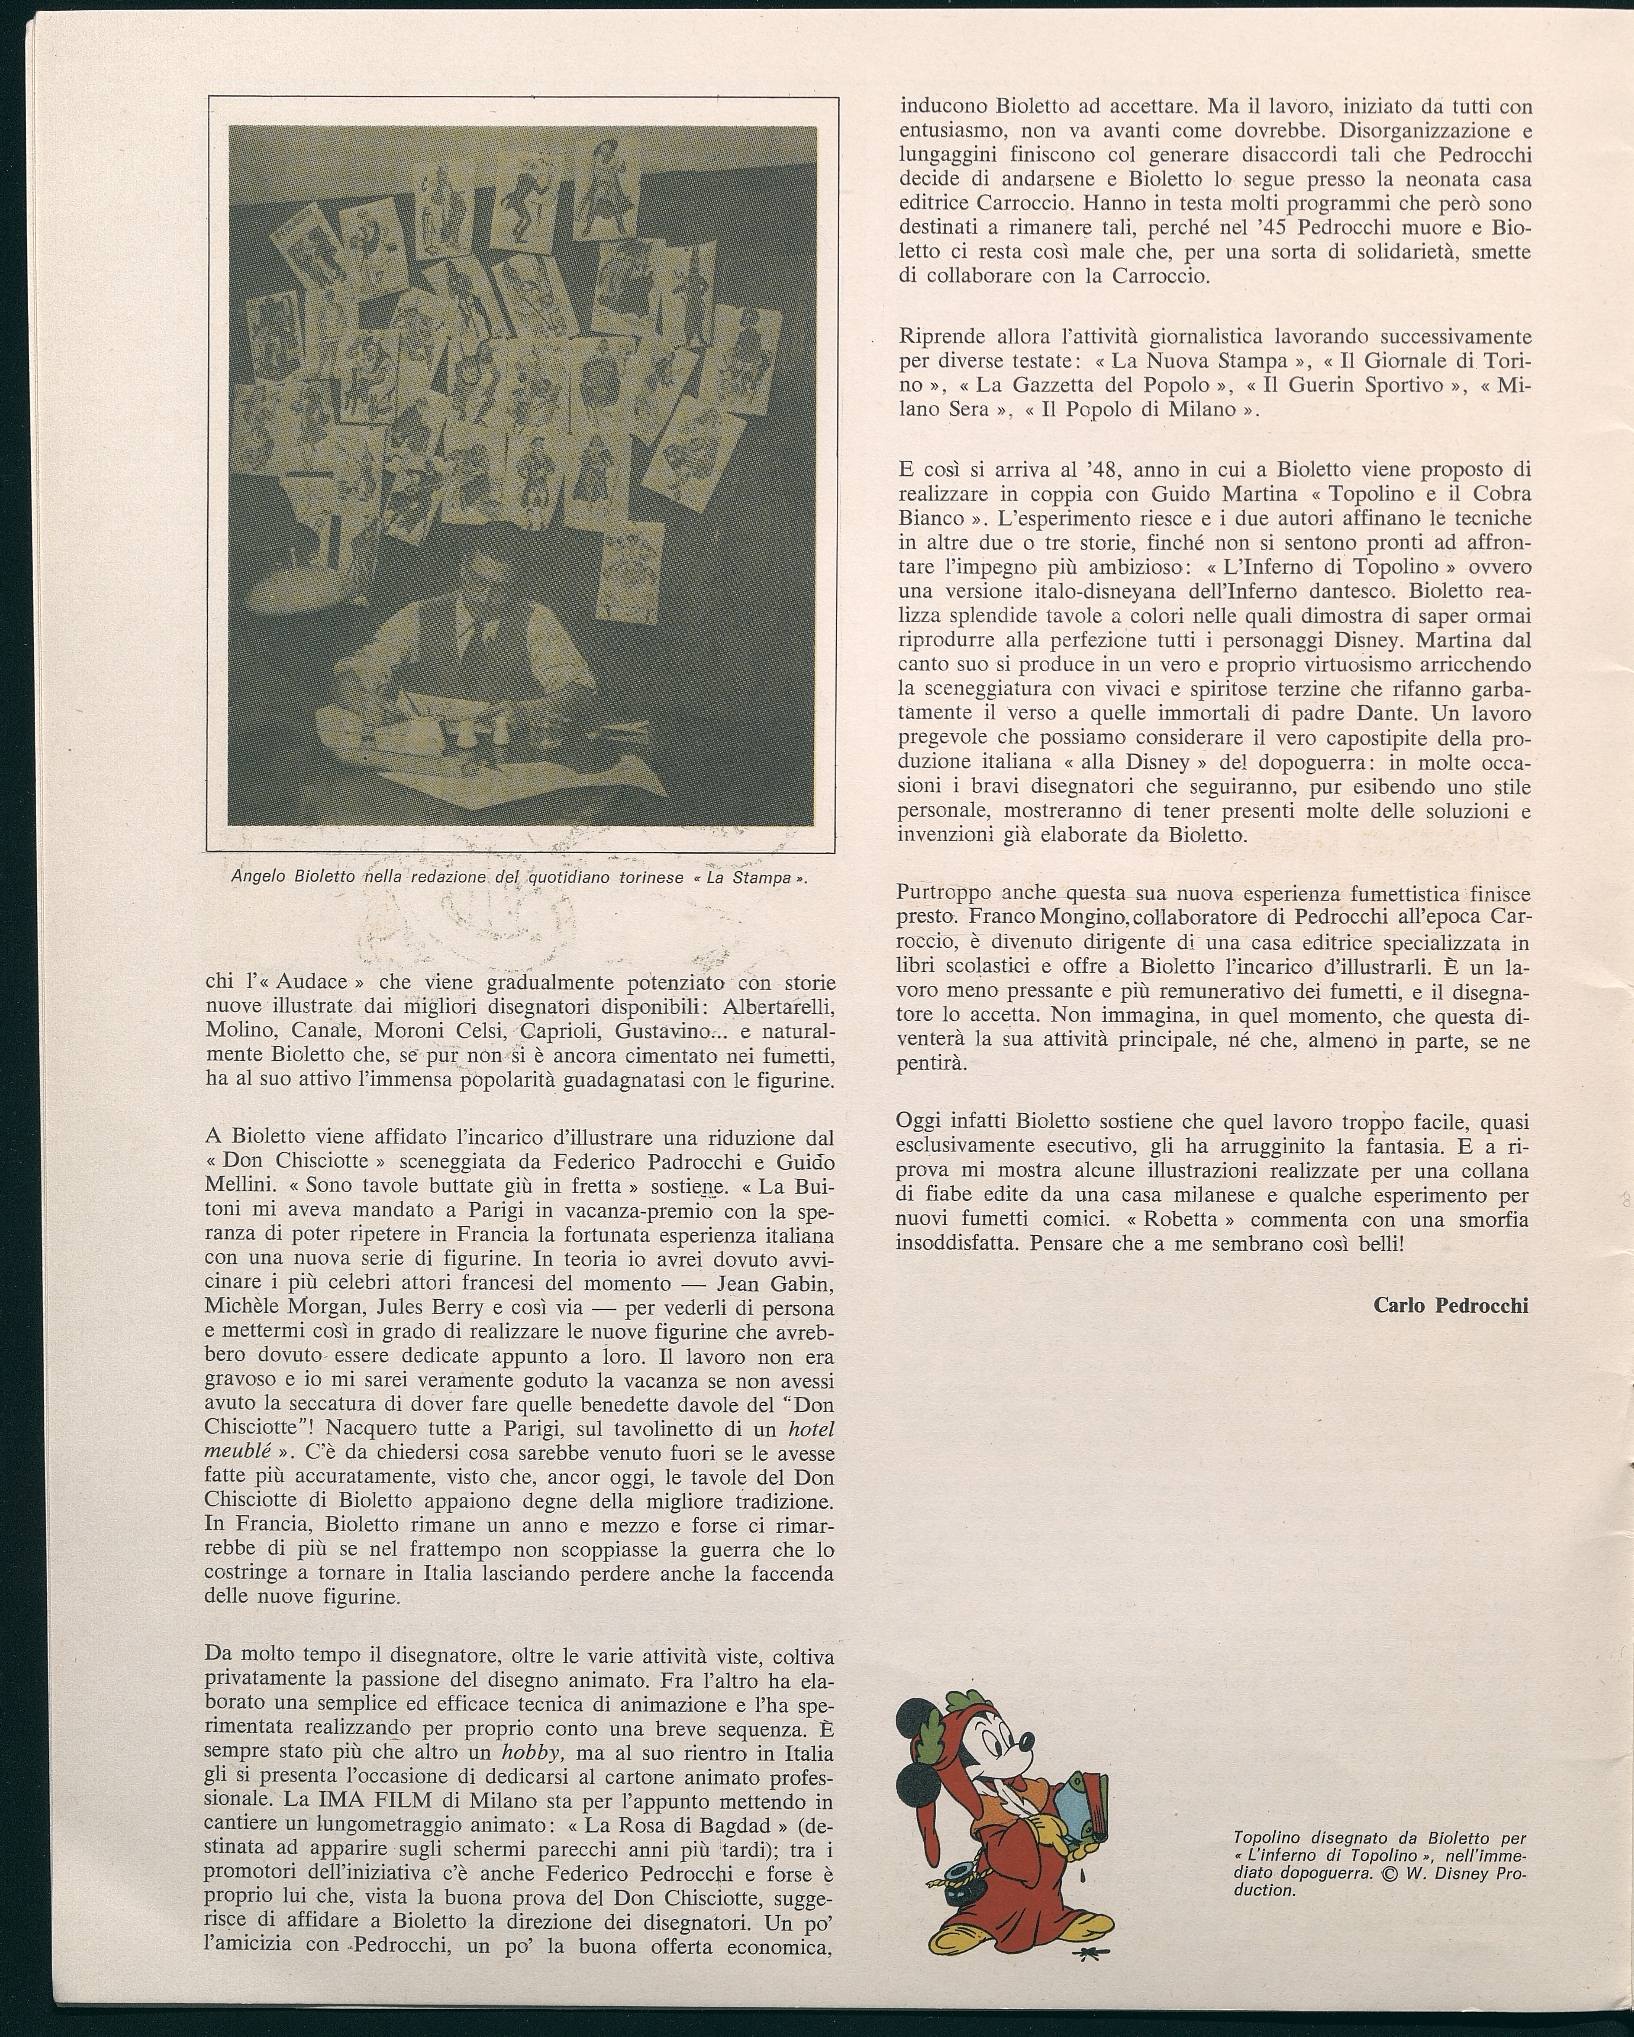 Don Chisciotte / Miguel de Cervantes; riduzione di Federico Pedrocchi e Guido Mellini; disegni di Angelo Bioletto.  --  Milano : I Fumeetti Amatoriali, 1975